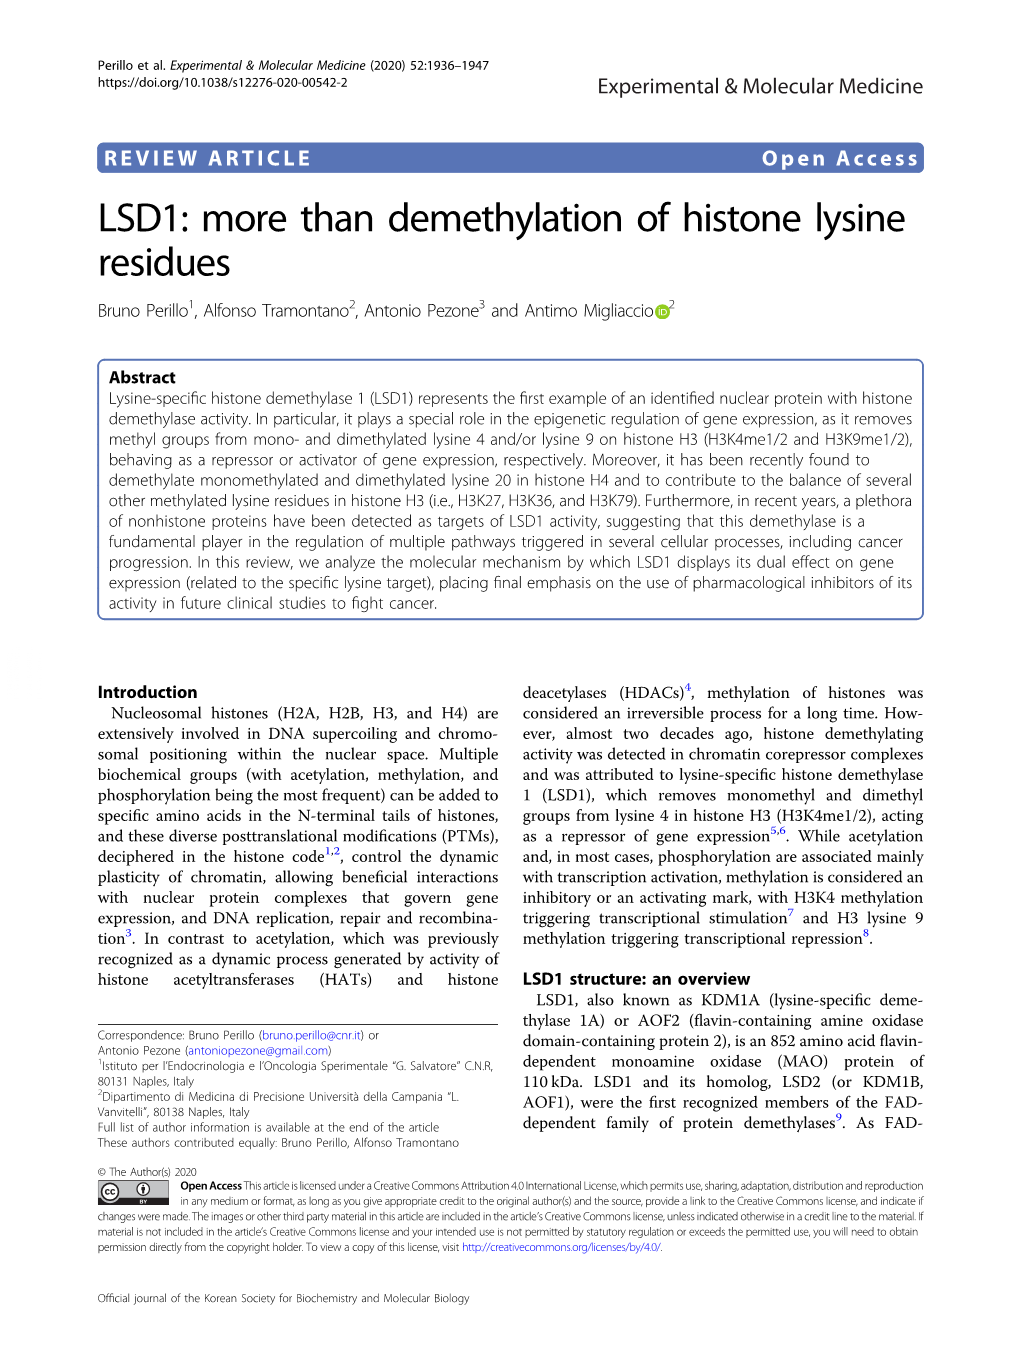 LSD1: More Than Demethylation of Histone Lysine Residues Bruno Perillo1, Alfonso Tramontano2, Antonio Pezone3 and Antimo Migliaccio 2